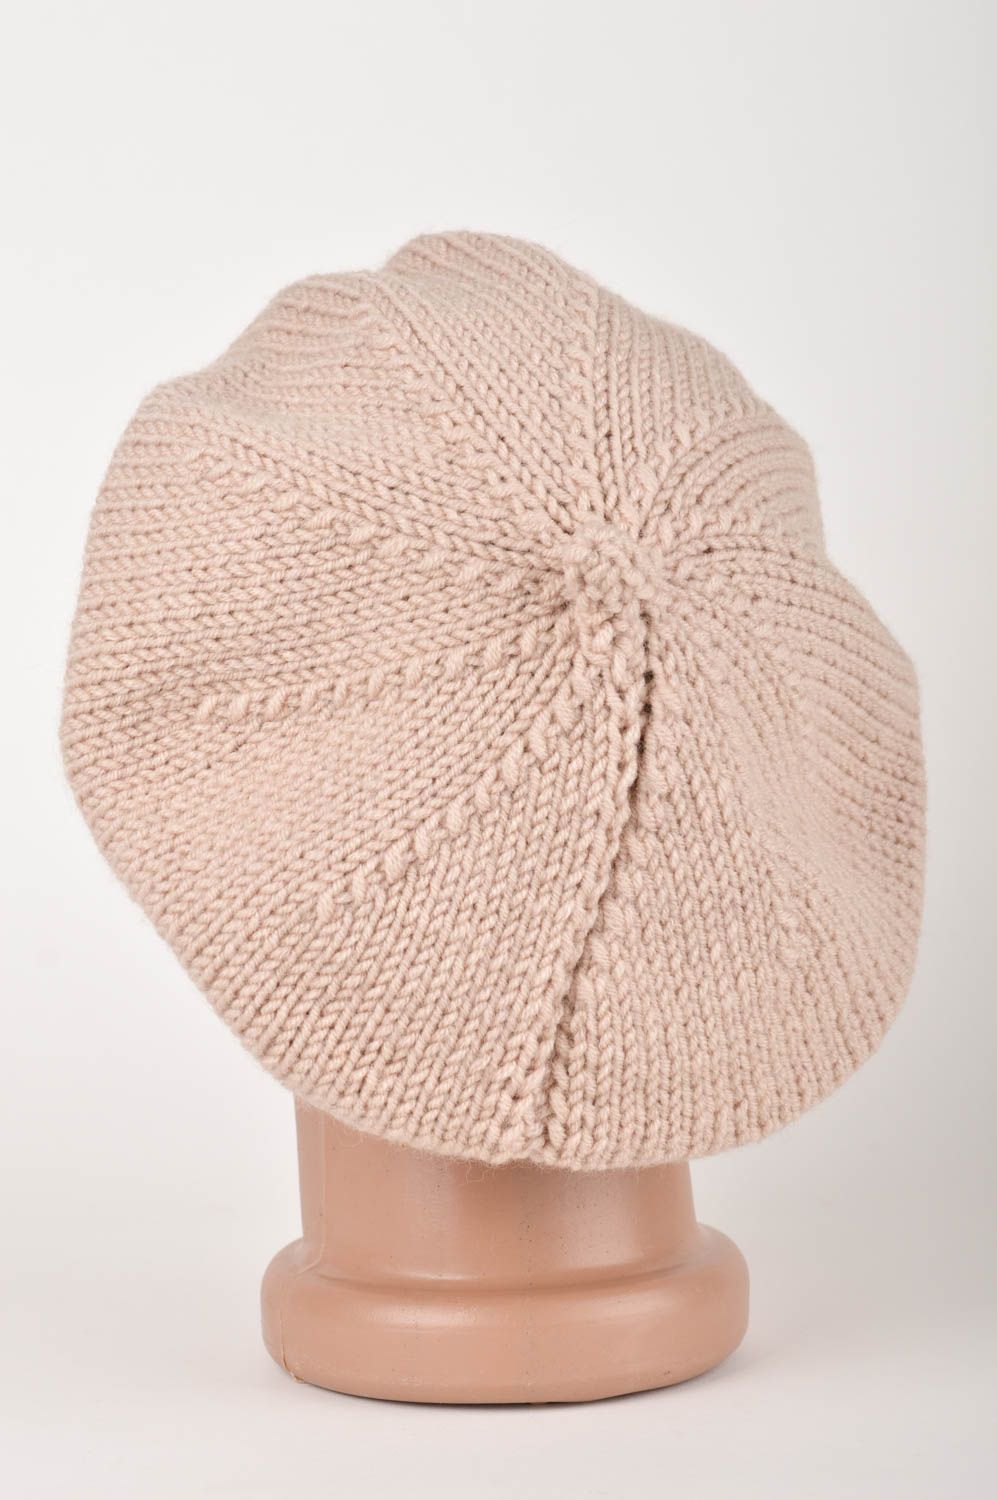 Handmade crocheted beret warm unusual cap crocheted headwear for women photo 5